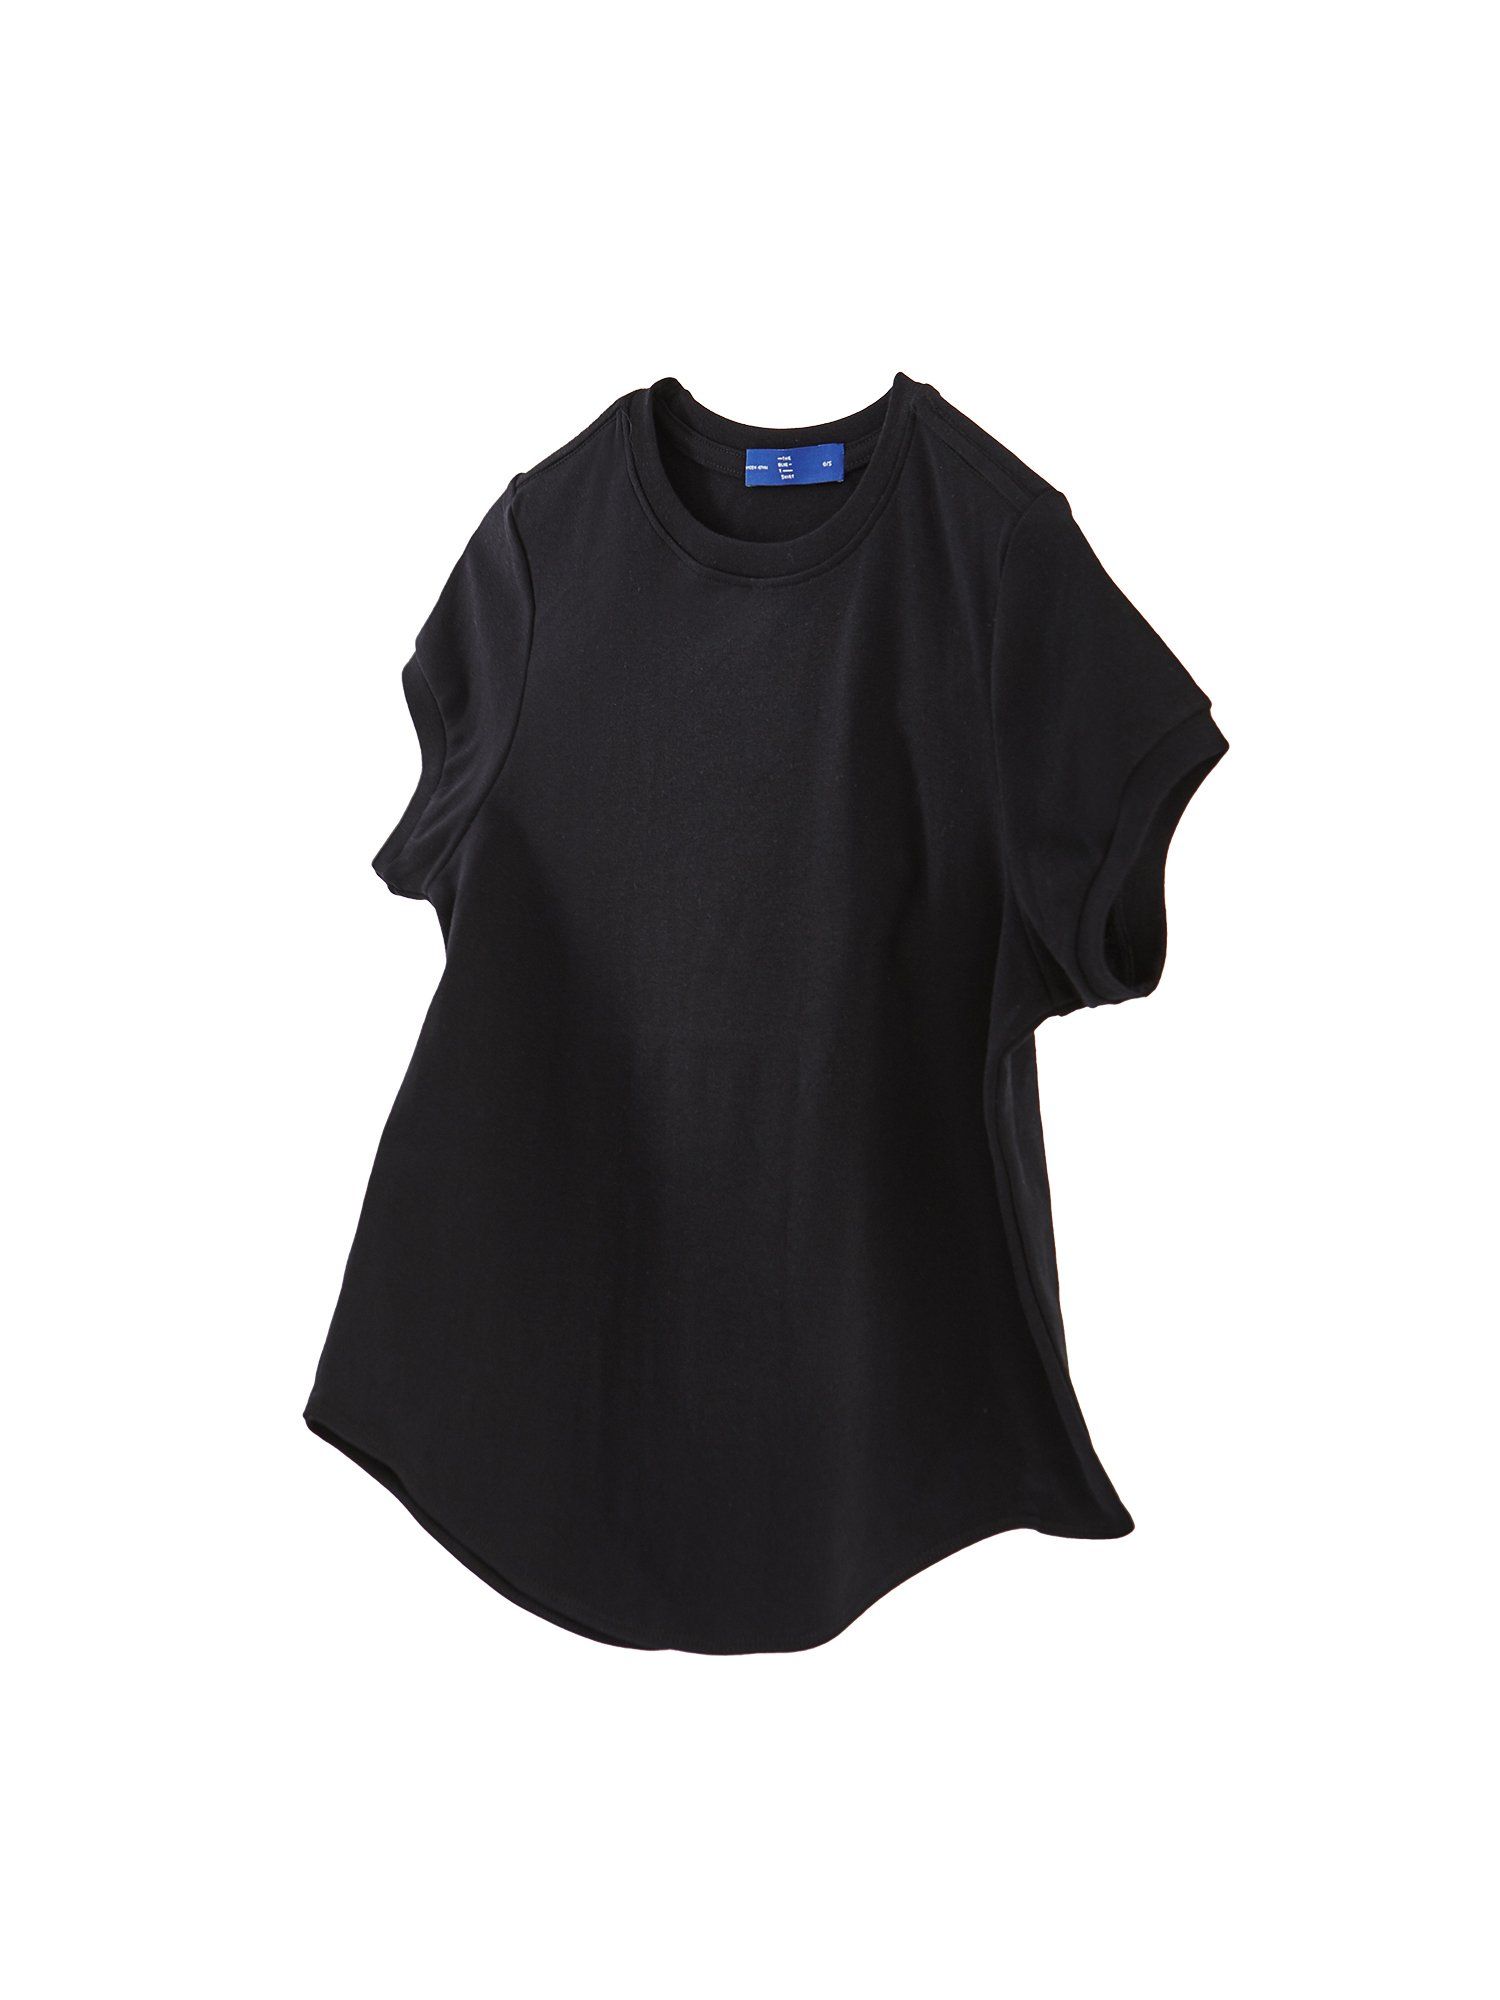  Áo Thun Nữ TheBlueTshirt 1990s Tshirt - Black 